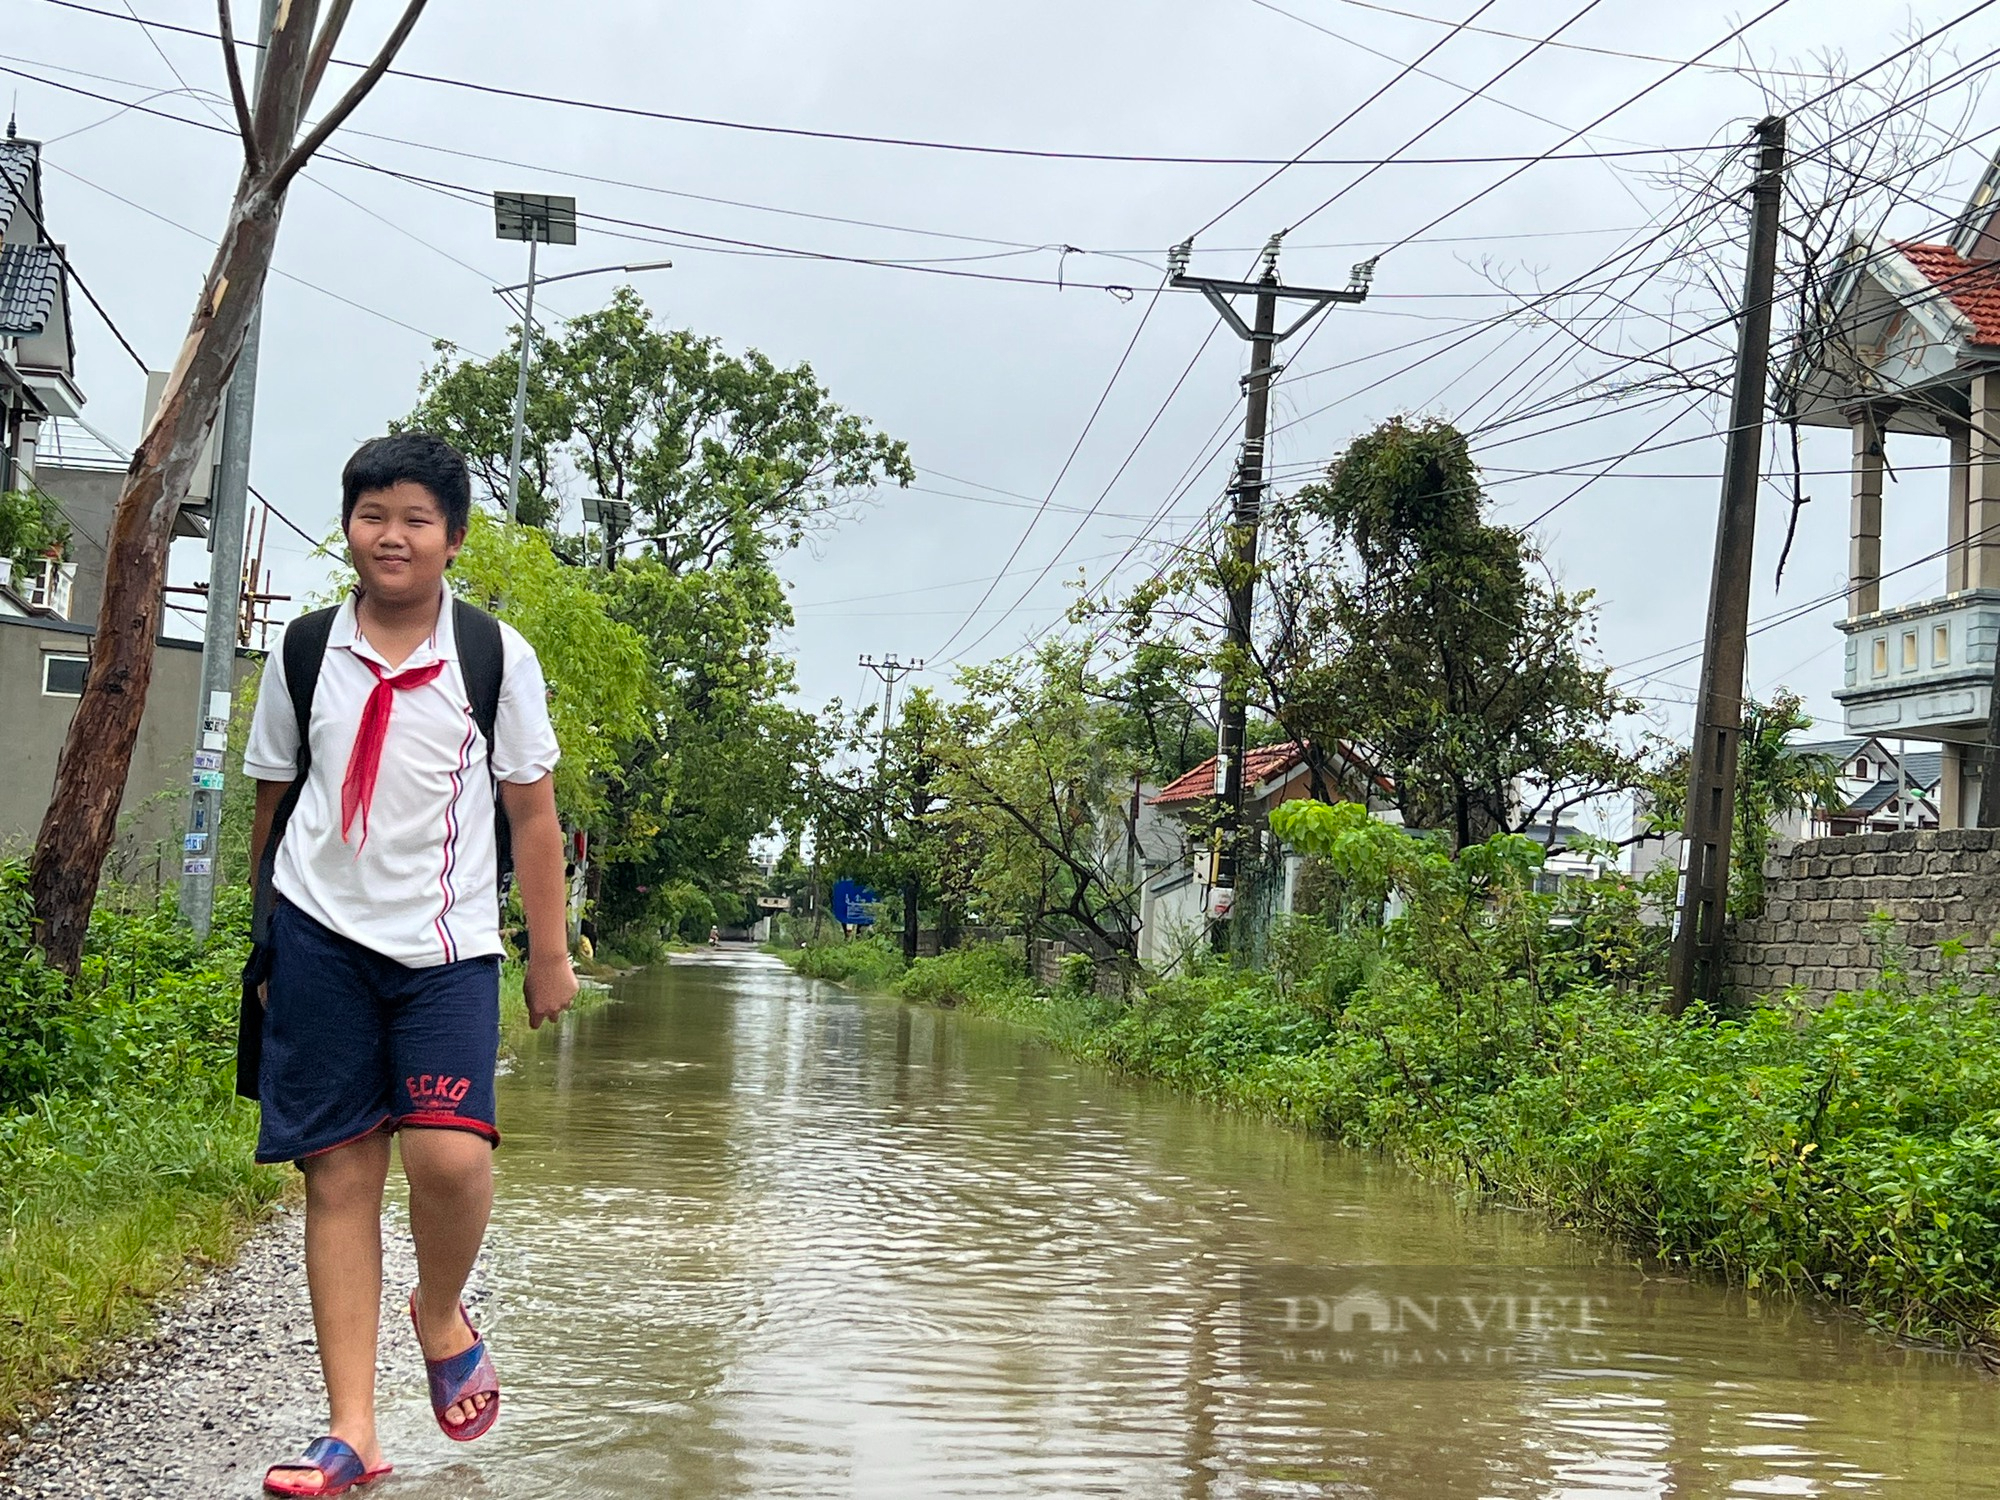 Hàng trăm hộ dân sống ở thành phố du lịch Sầm Sơn phải lội “sông” vào nhà mỗi khi trời mưa - Ảnh 2.